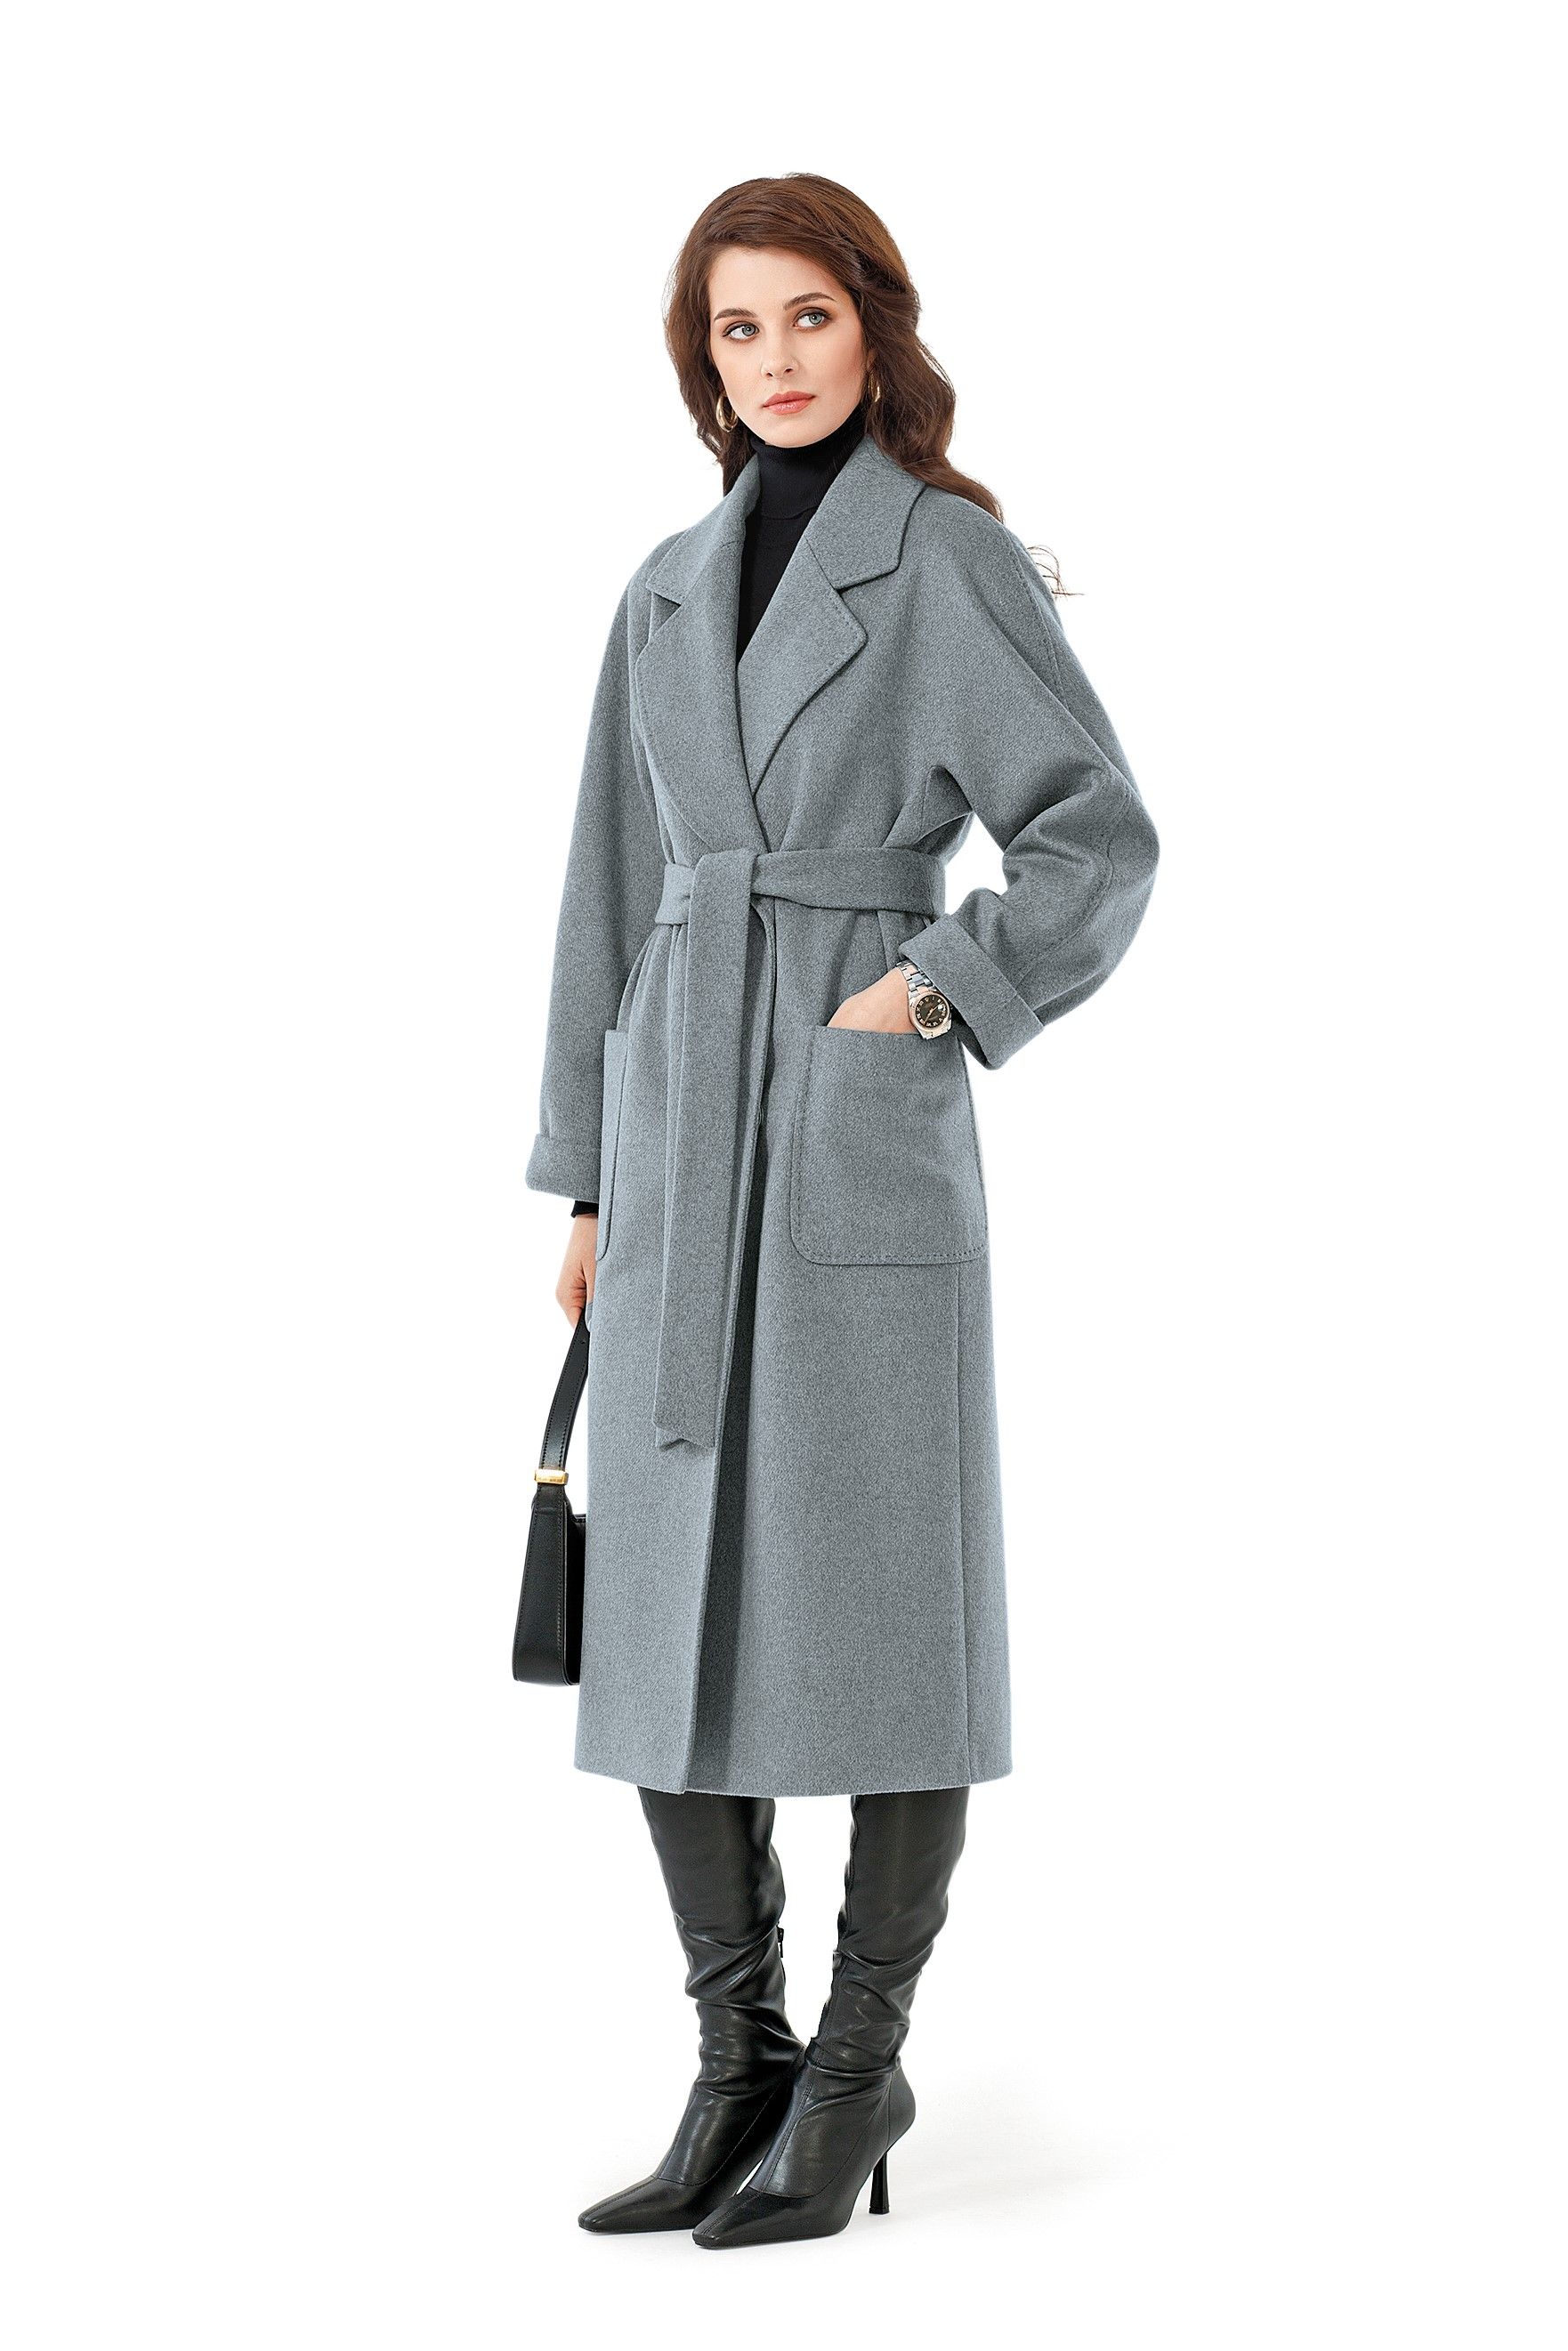 Как носить пальто этой весной: трендовые модели 2023